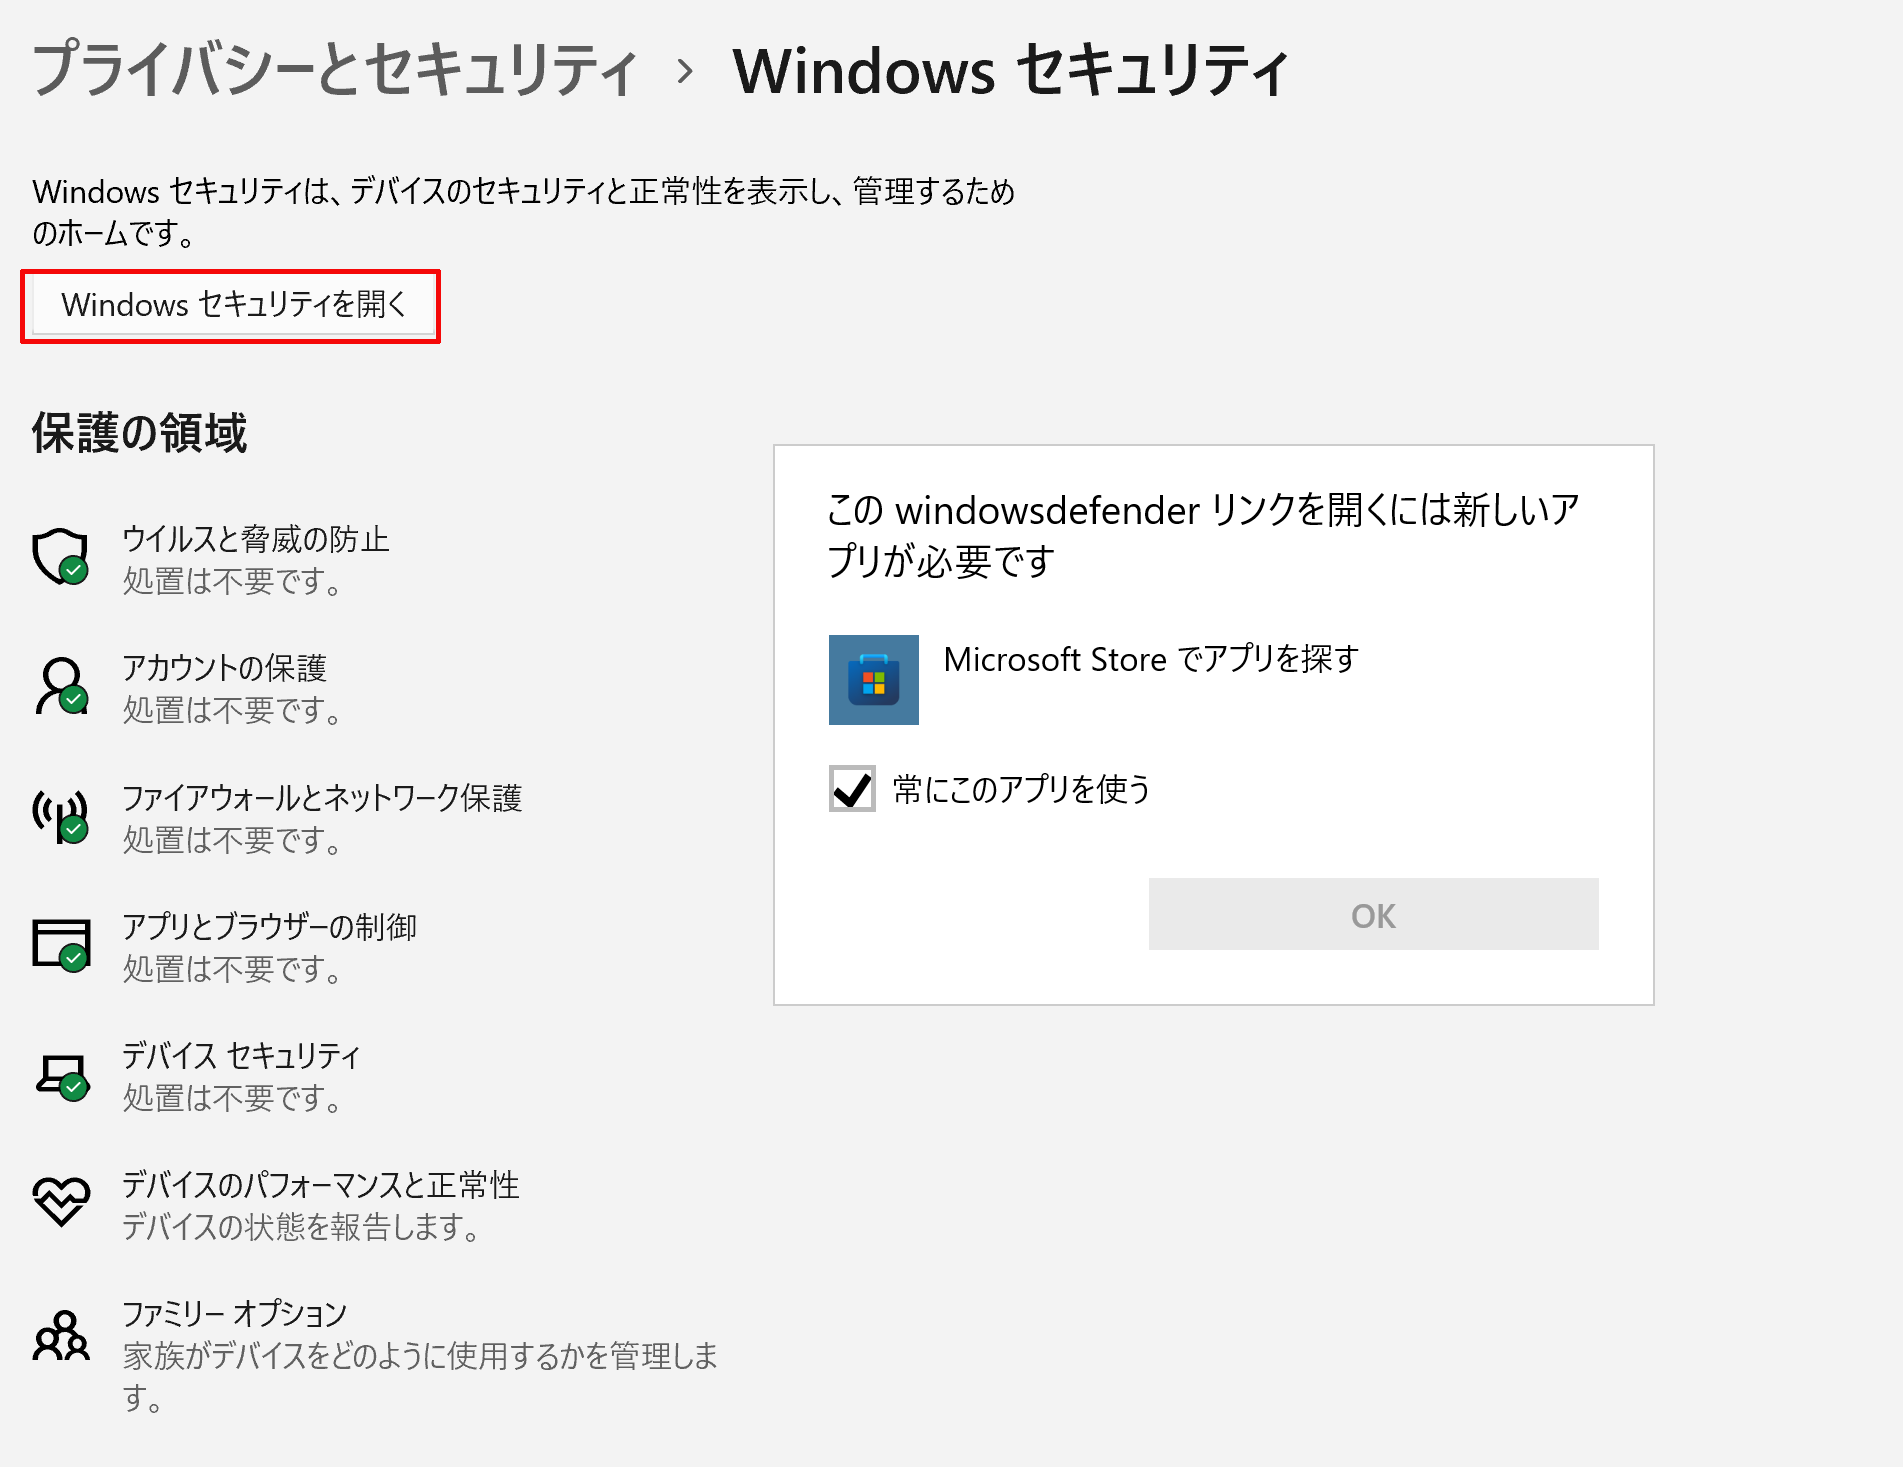 Windows11 でWindowsセキュリティが開けない時の対処法